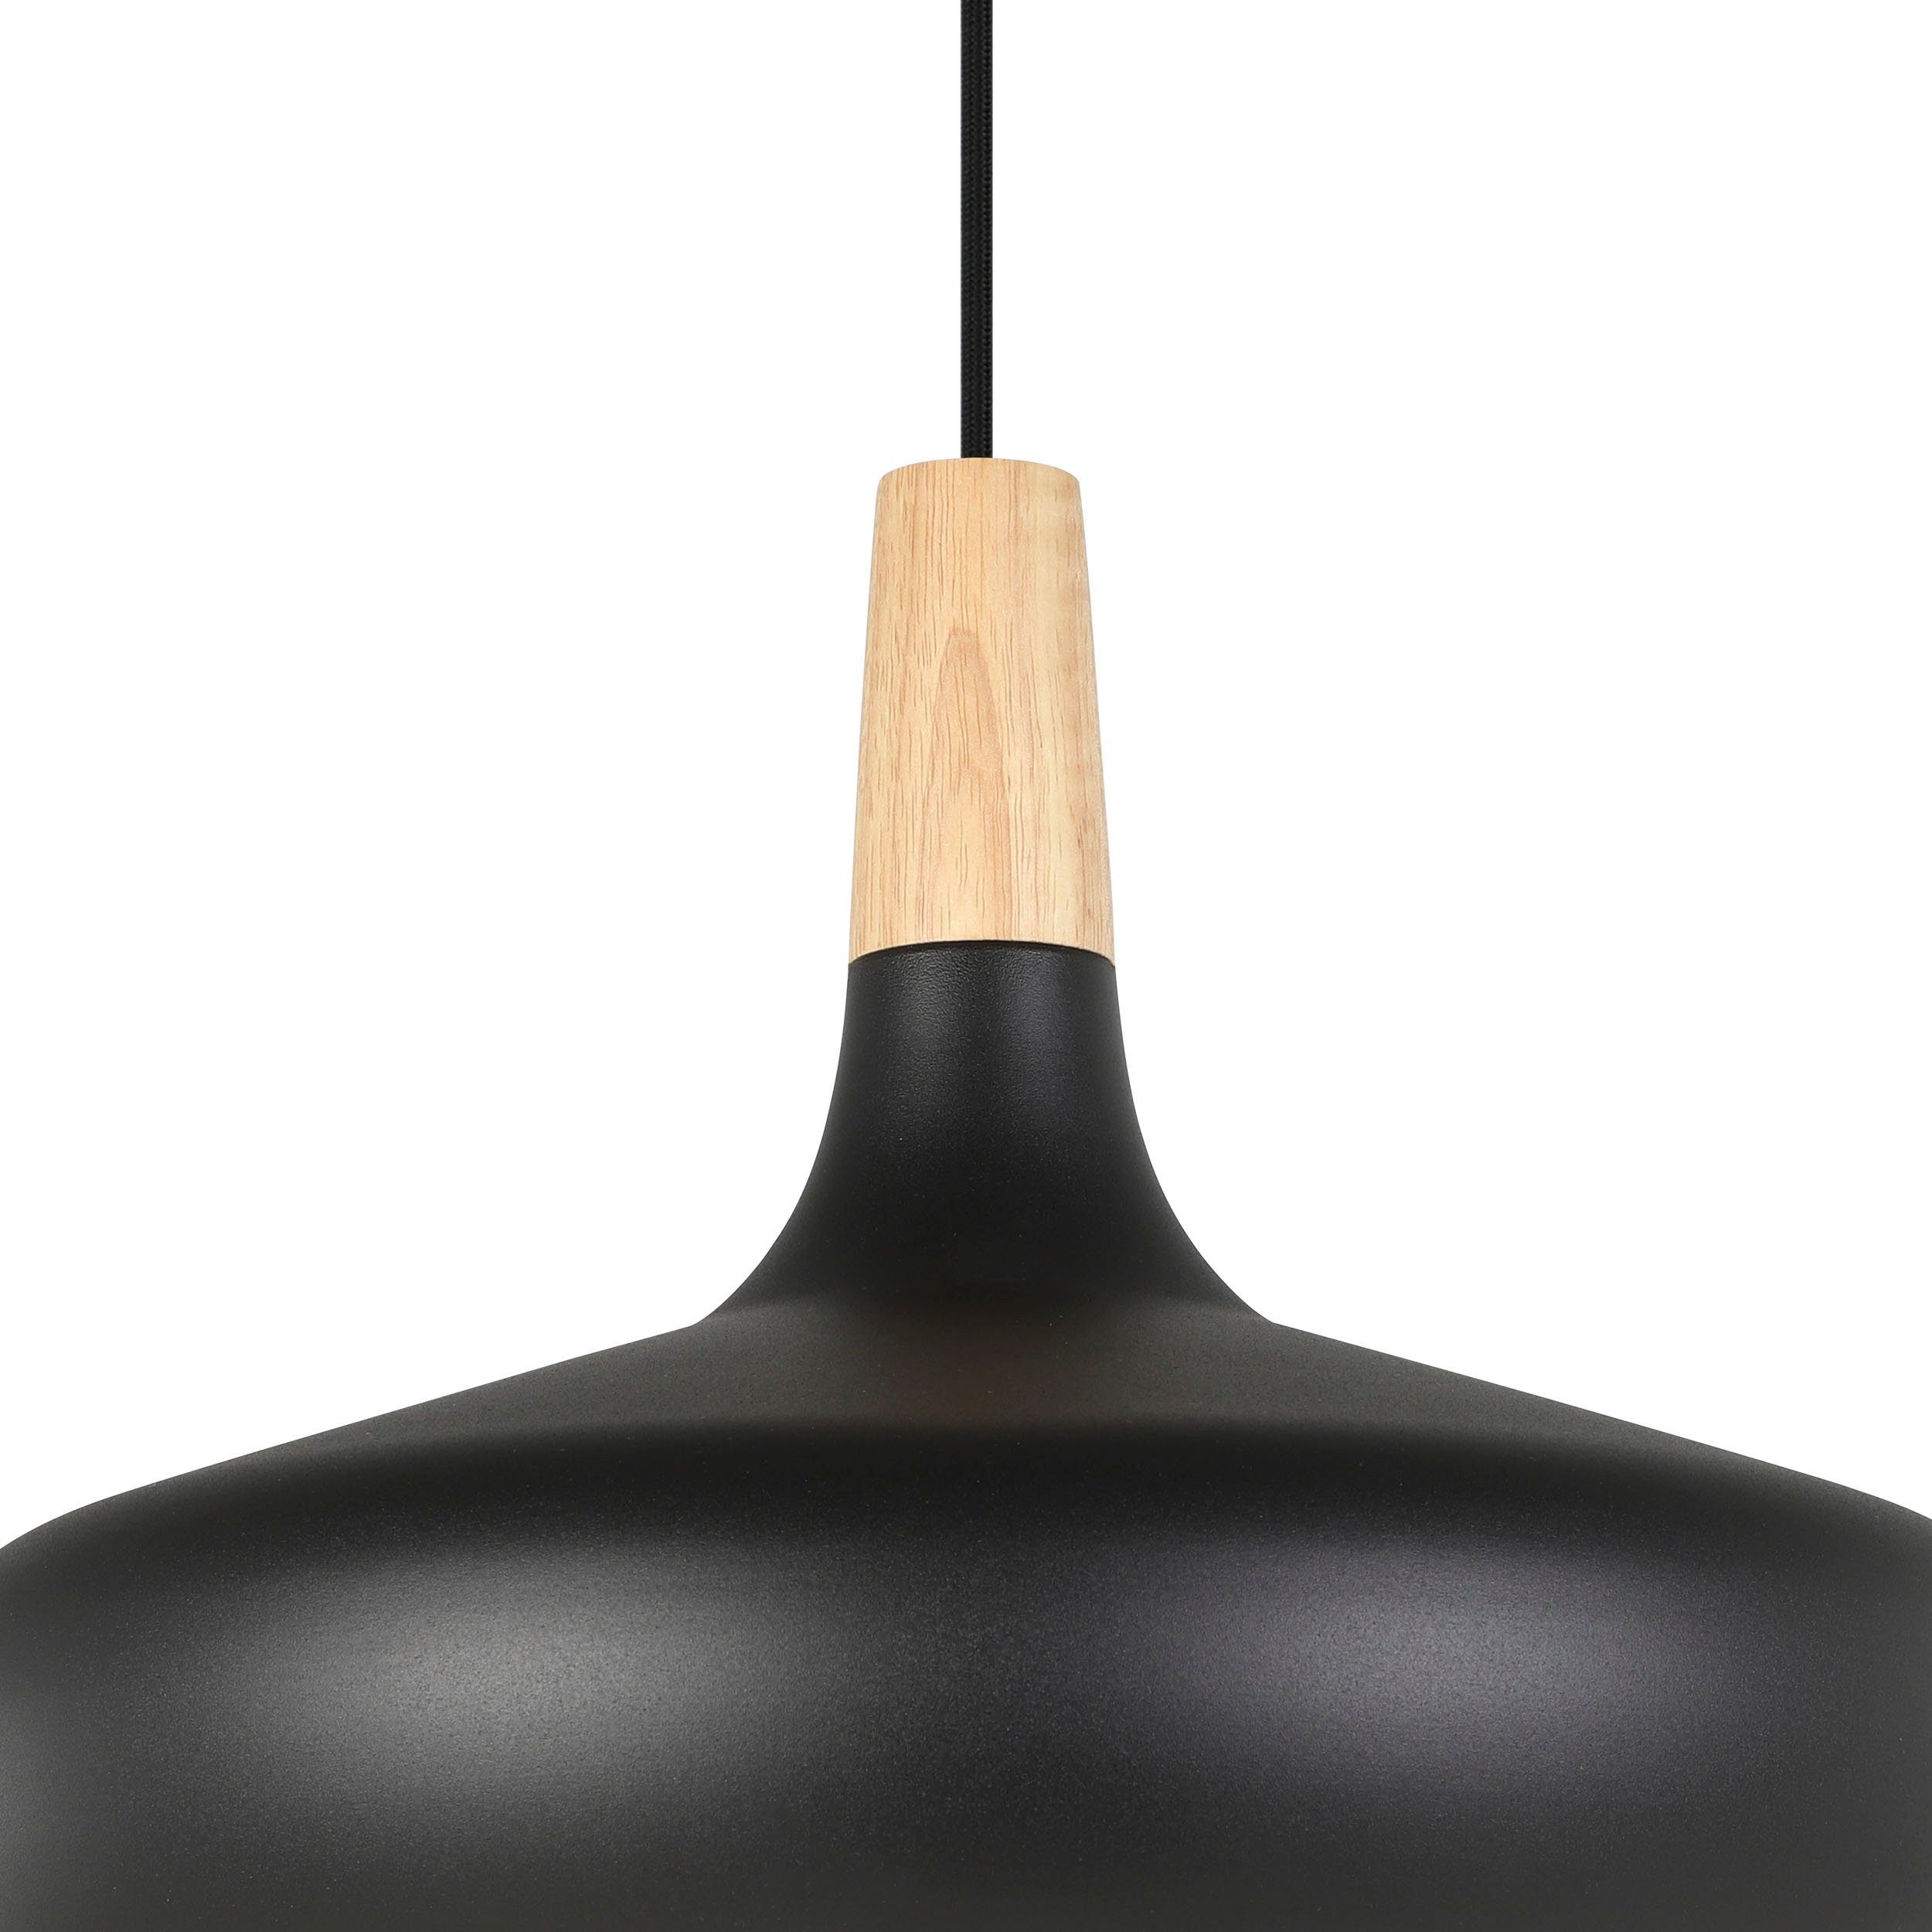 Stahl, von exkl. aus - in 40W, Hochwertige - Leuchte Hängeleuchte moderne braun E27 EGLO Holz schwarz und Hängeleuchte SABINAR, ohne Leuchtmittel, und EGLO Leuchten wechselbar, Leuchtmittel